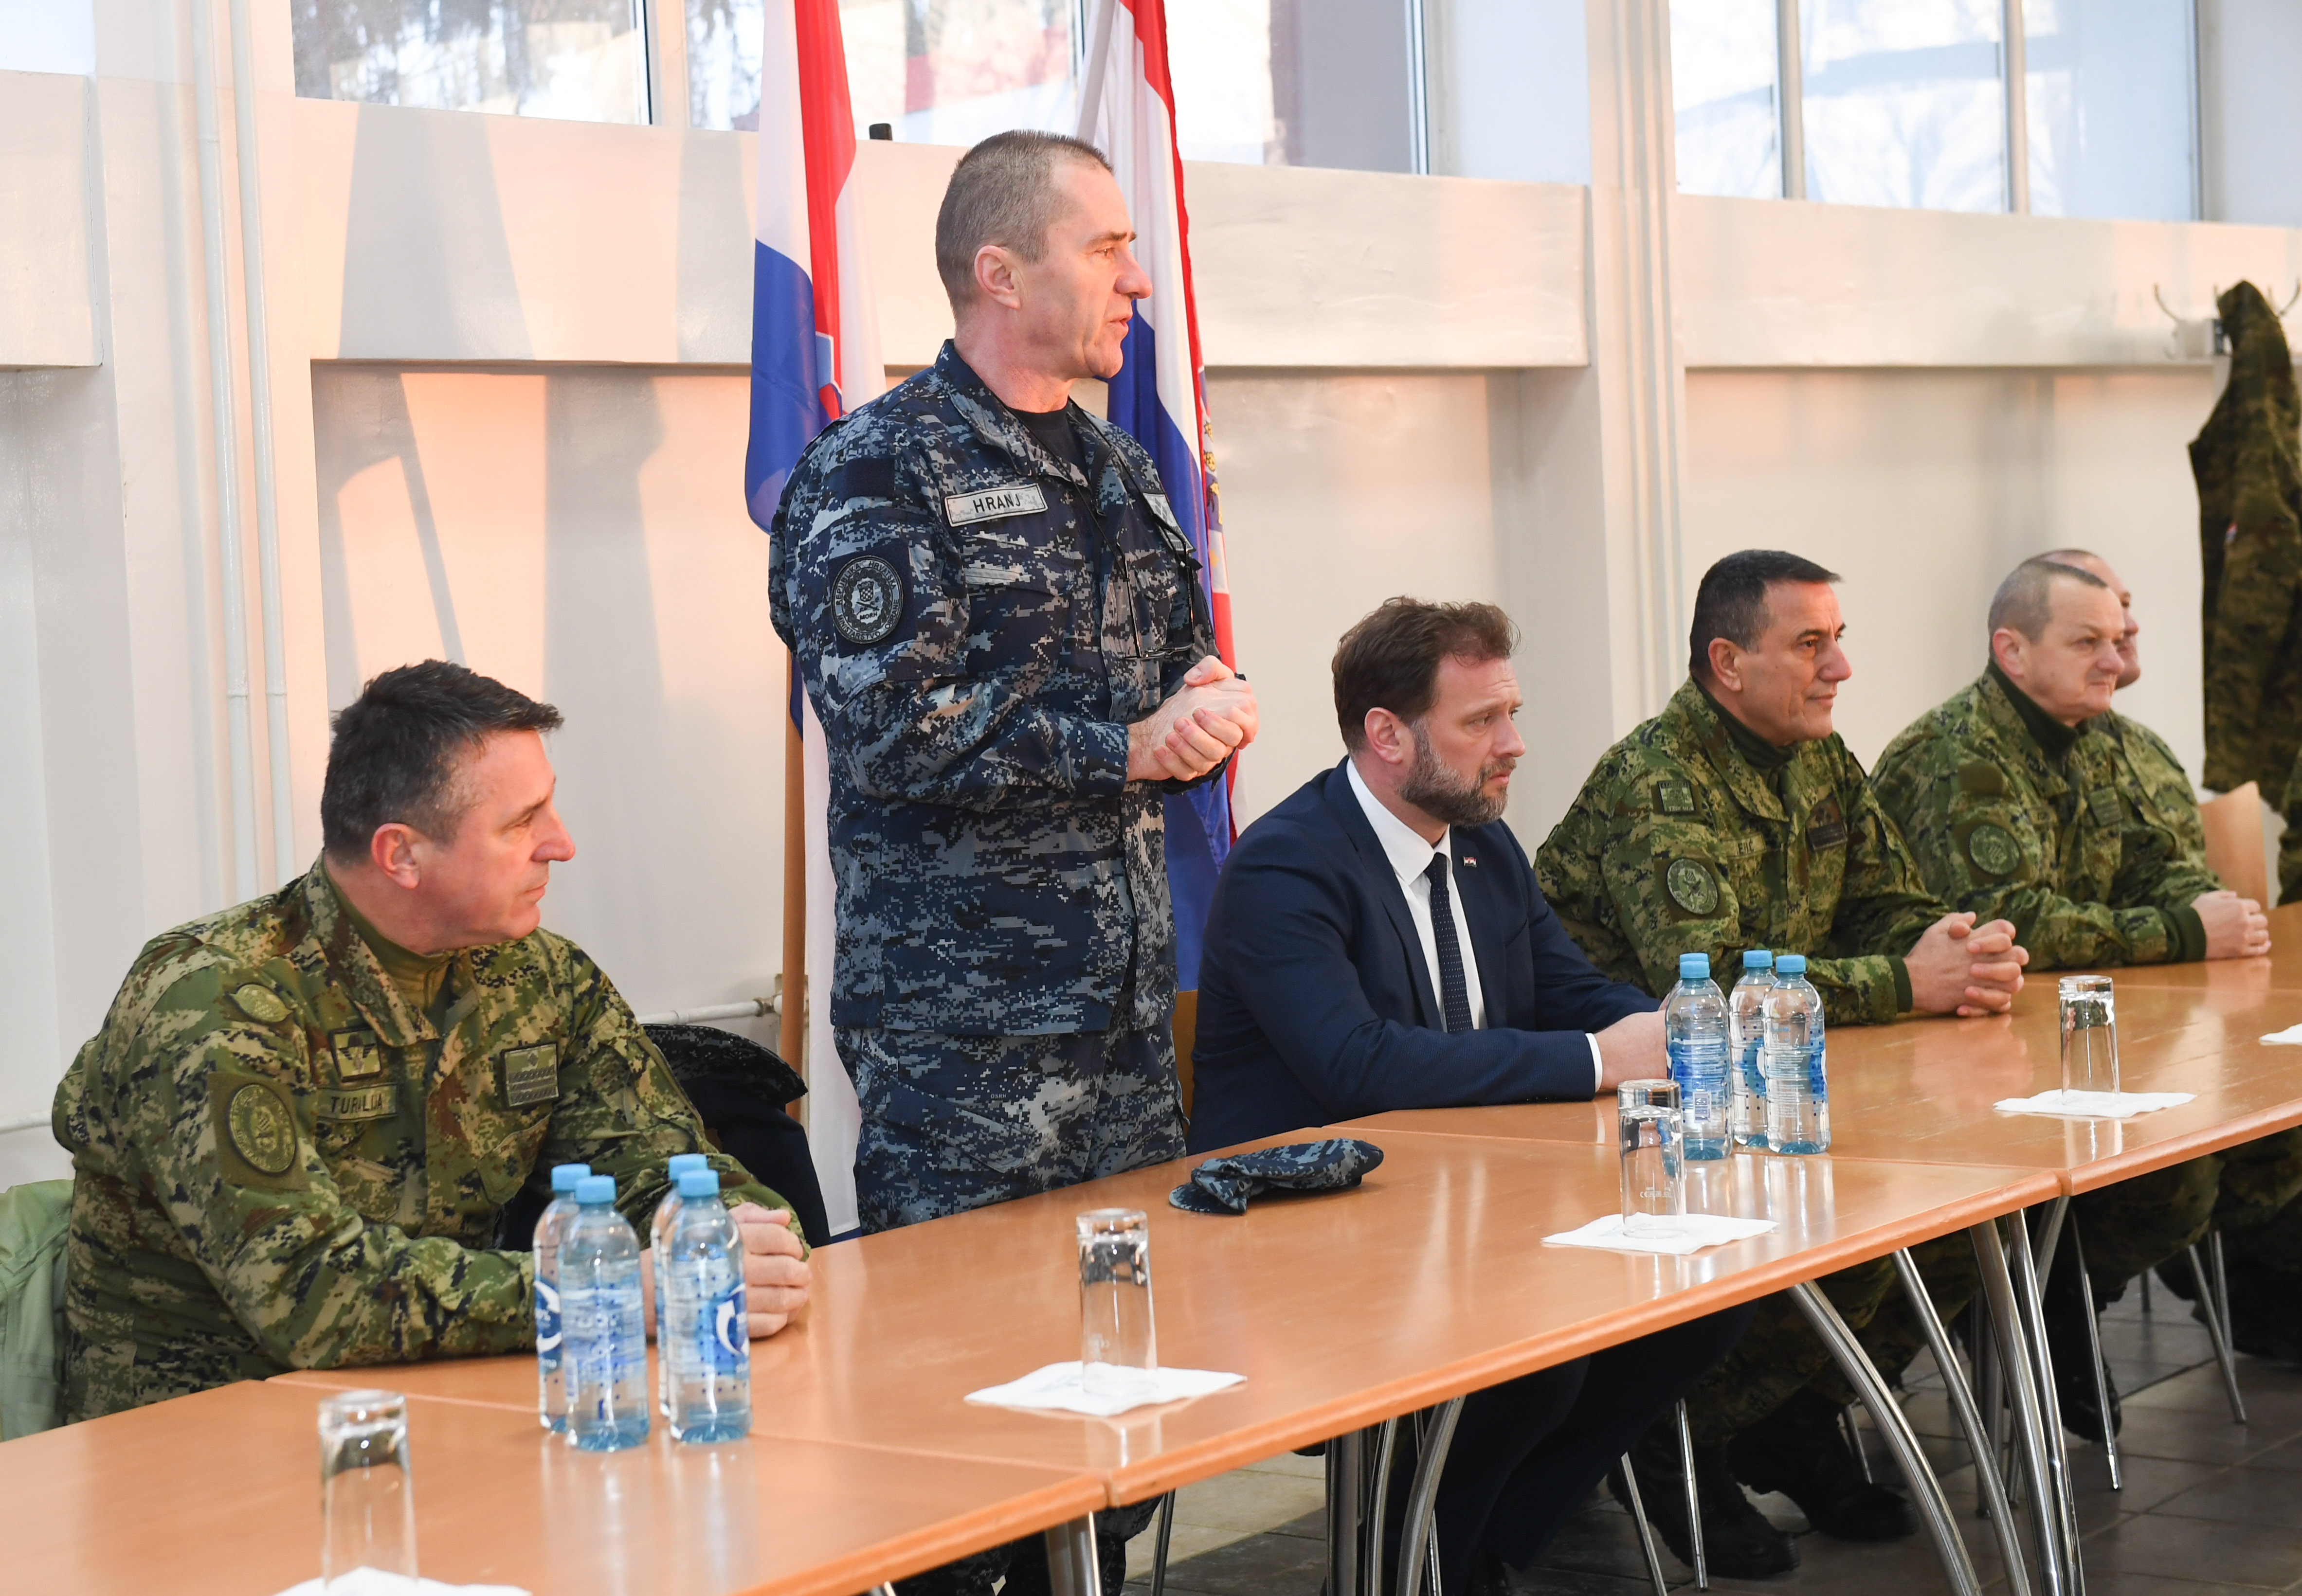 Ministar Banožić s pripadnicima 2. HRVCON-a koji se upućuju u NATO aktivnost u Mađarsku